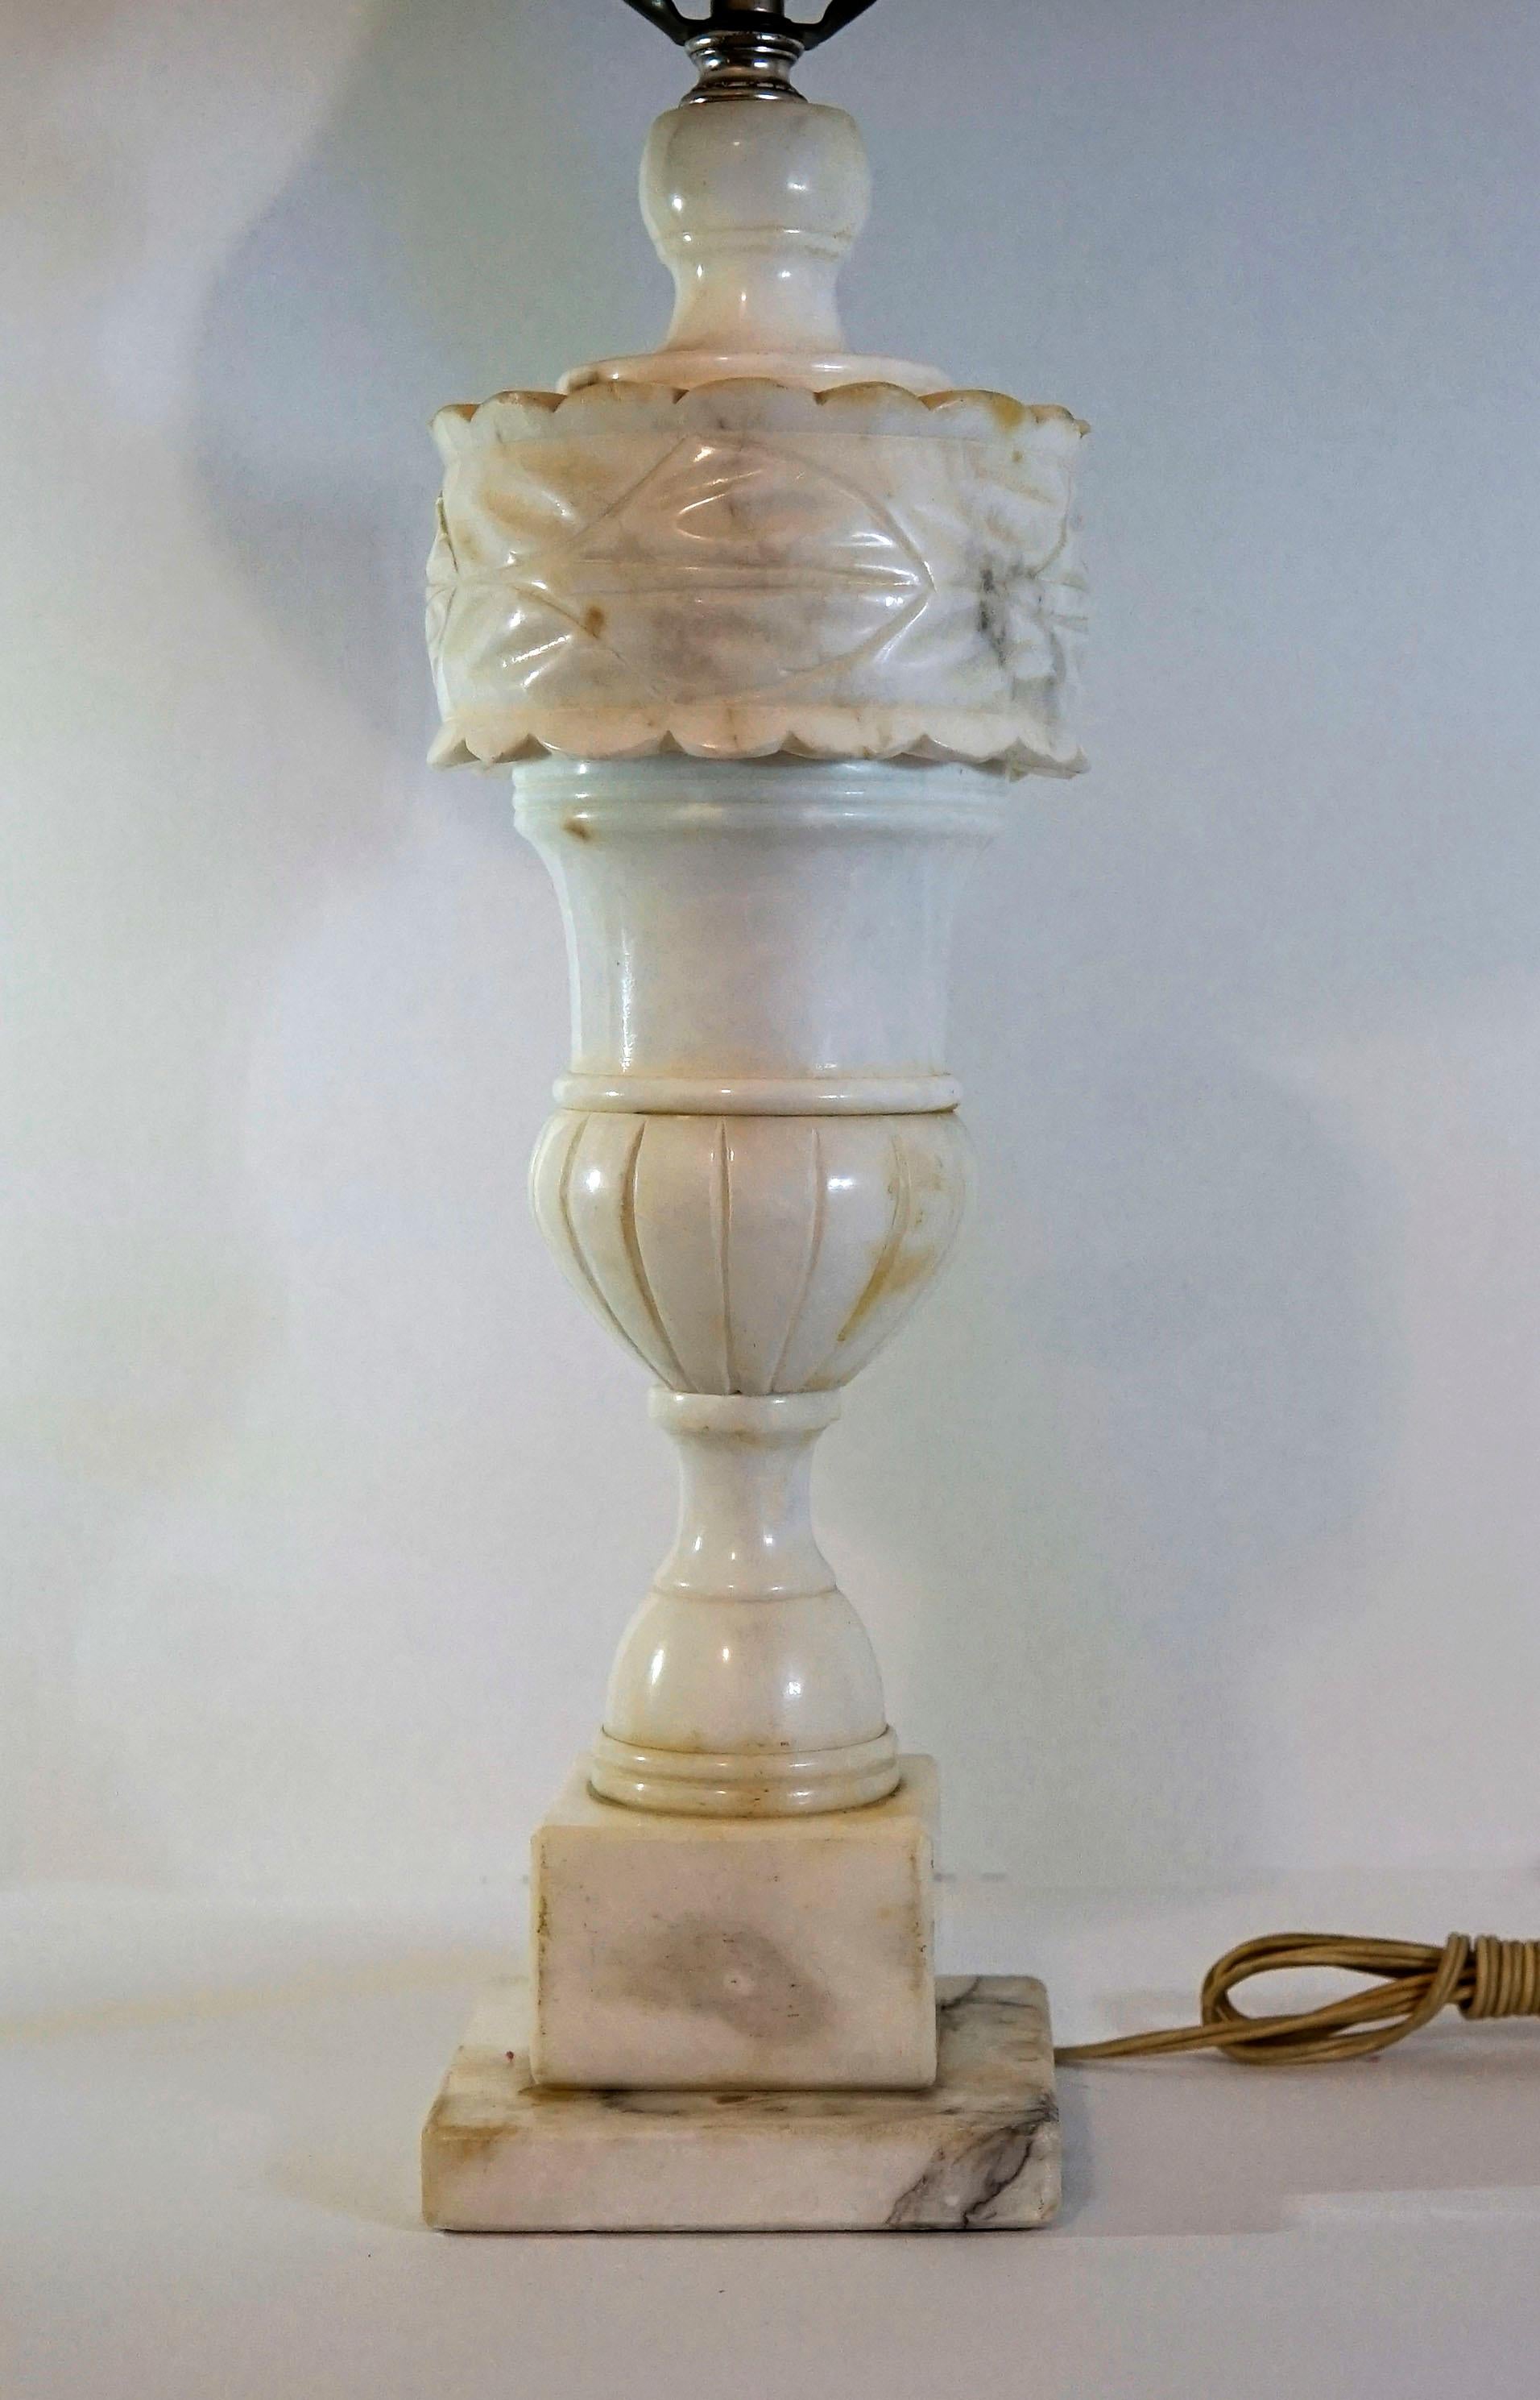 Diese Alabasterlampe besticht durch ihre unregelmäßige Maserung und die exquisiten Schnitzereien. Es handelt sich um einen antiken, handgeschnitzten Alabaster im Regency-Stil aus dem späten 19. Jahrhundert.
Die Balusterform wird von einer